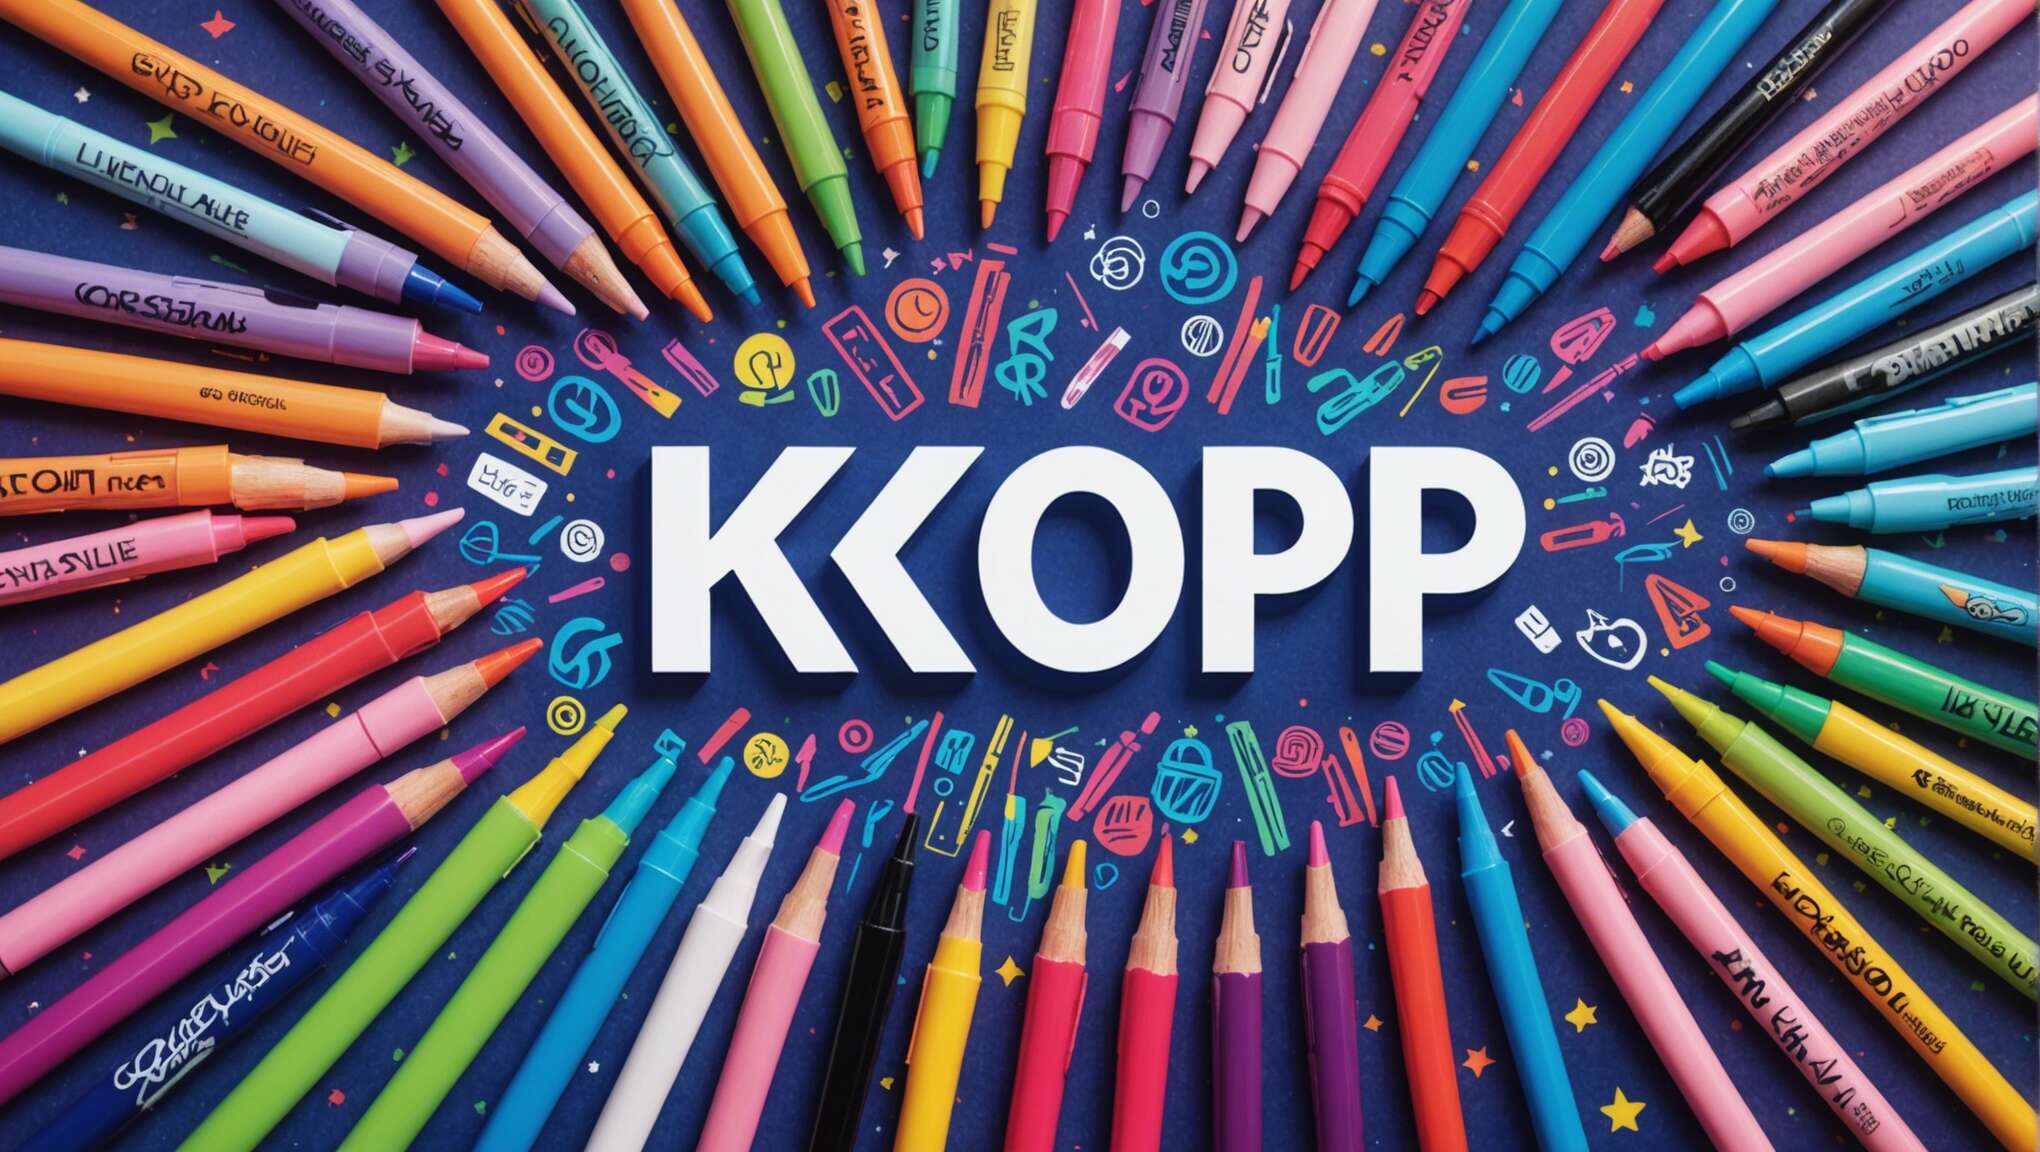 Le stylo gel, indispensable de la rentrée des fans de k-pop